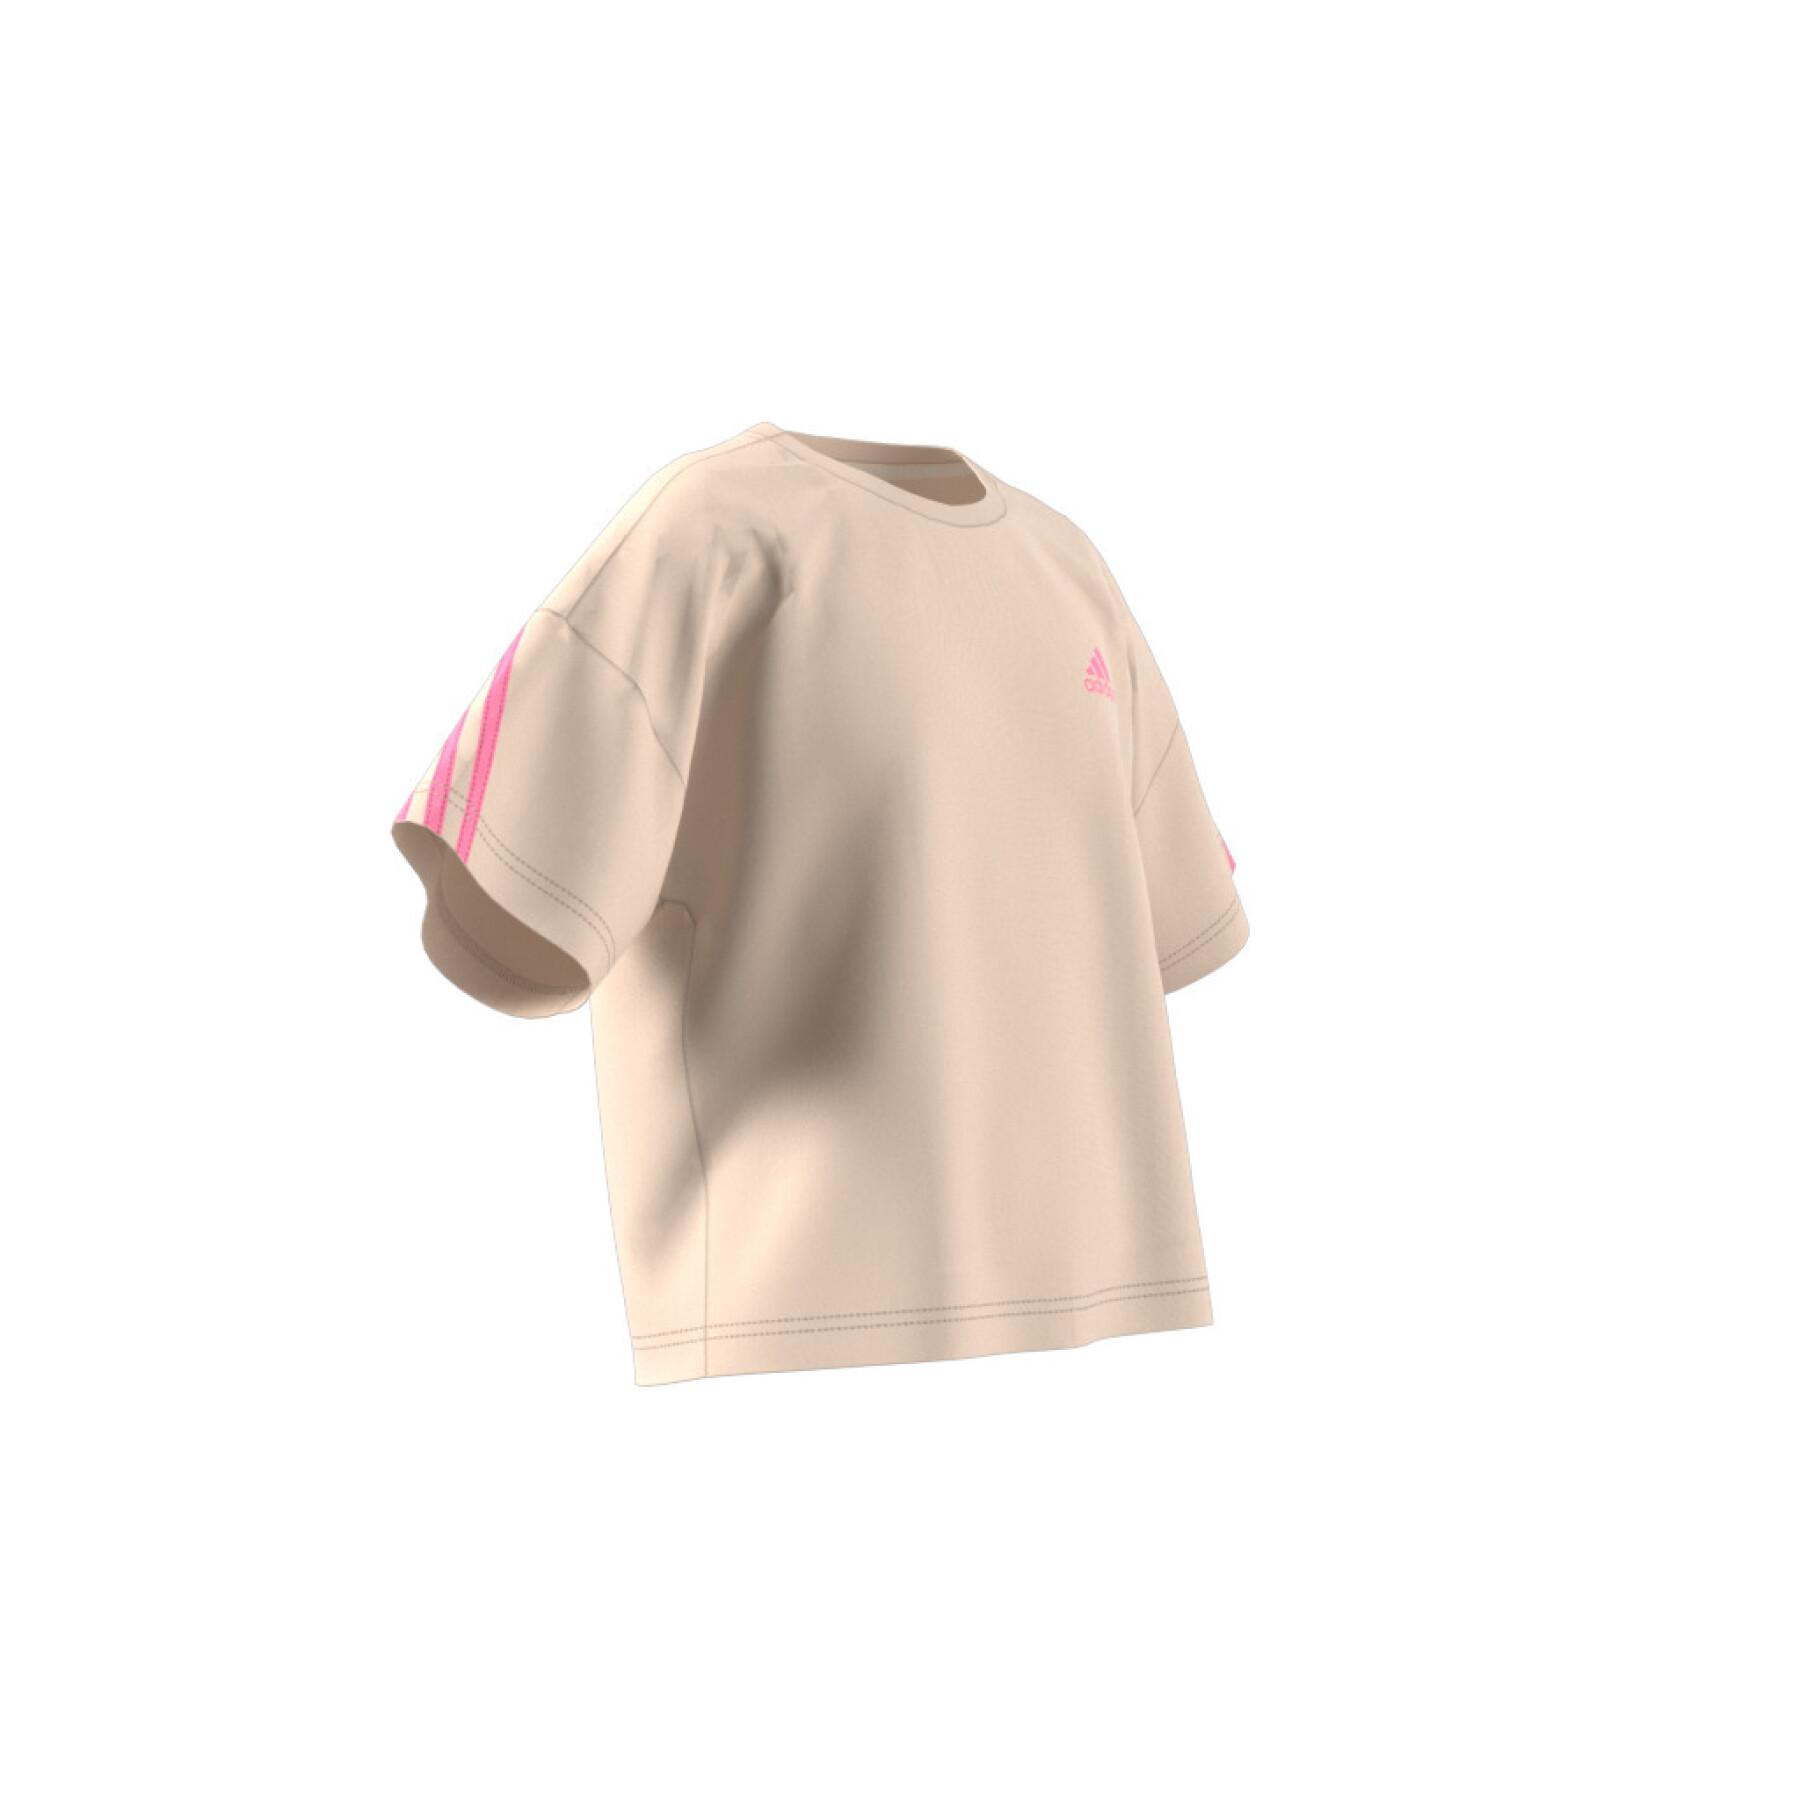 T-shirt de sport ample en coton biologique à 3 bandes fille adidas Future Icons